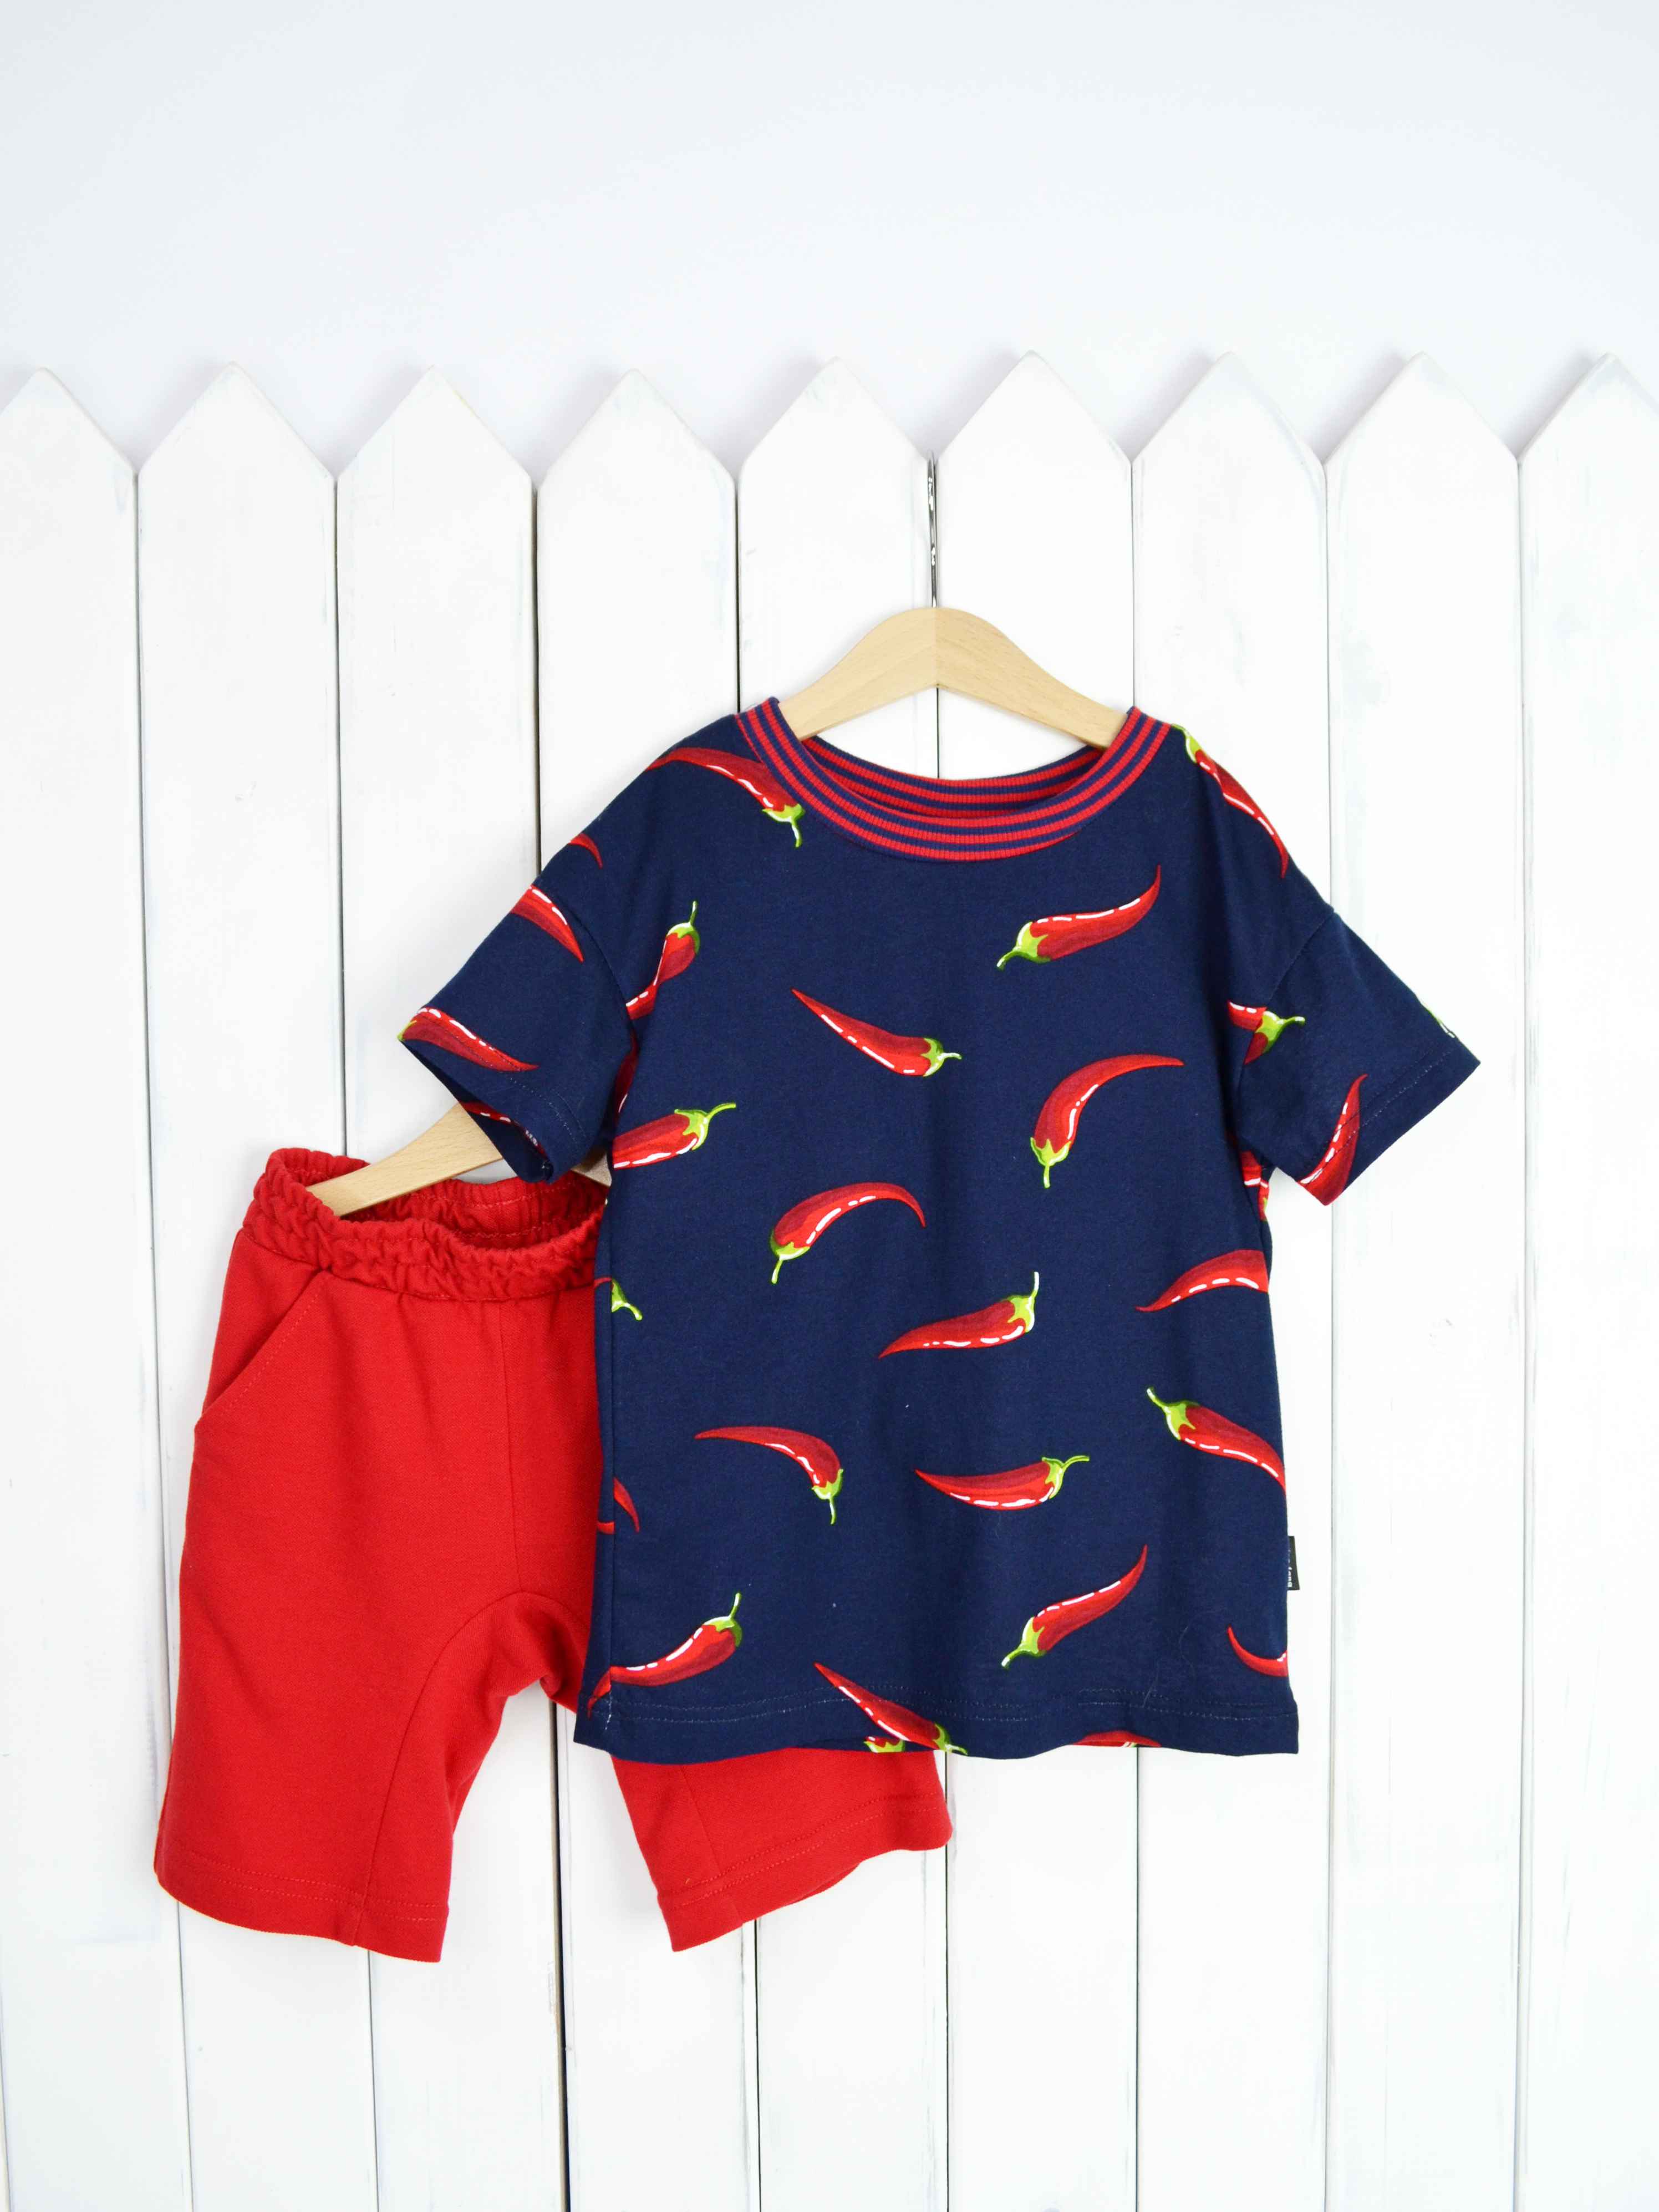 КД354/1-К Комплект детский р.116 Крутые перцы футболка+шорты/красное пике Бэби Бум - Елабуга 